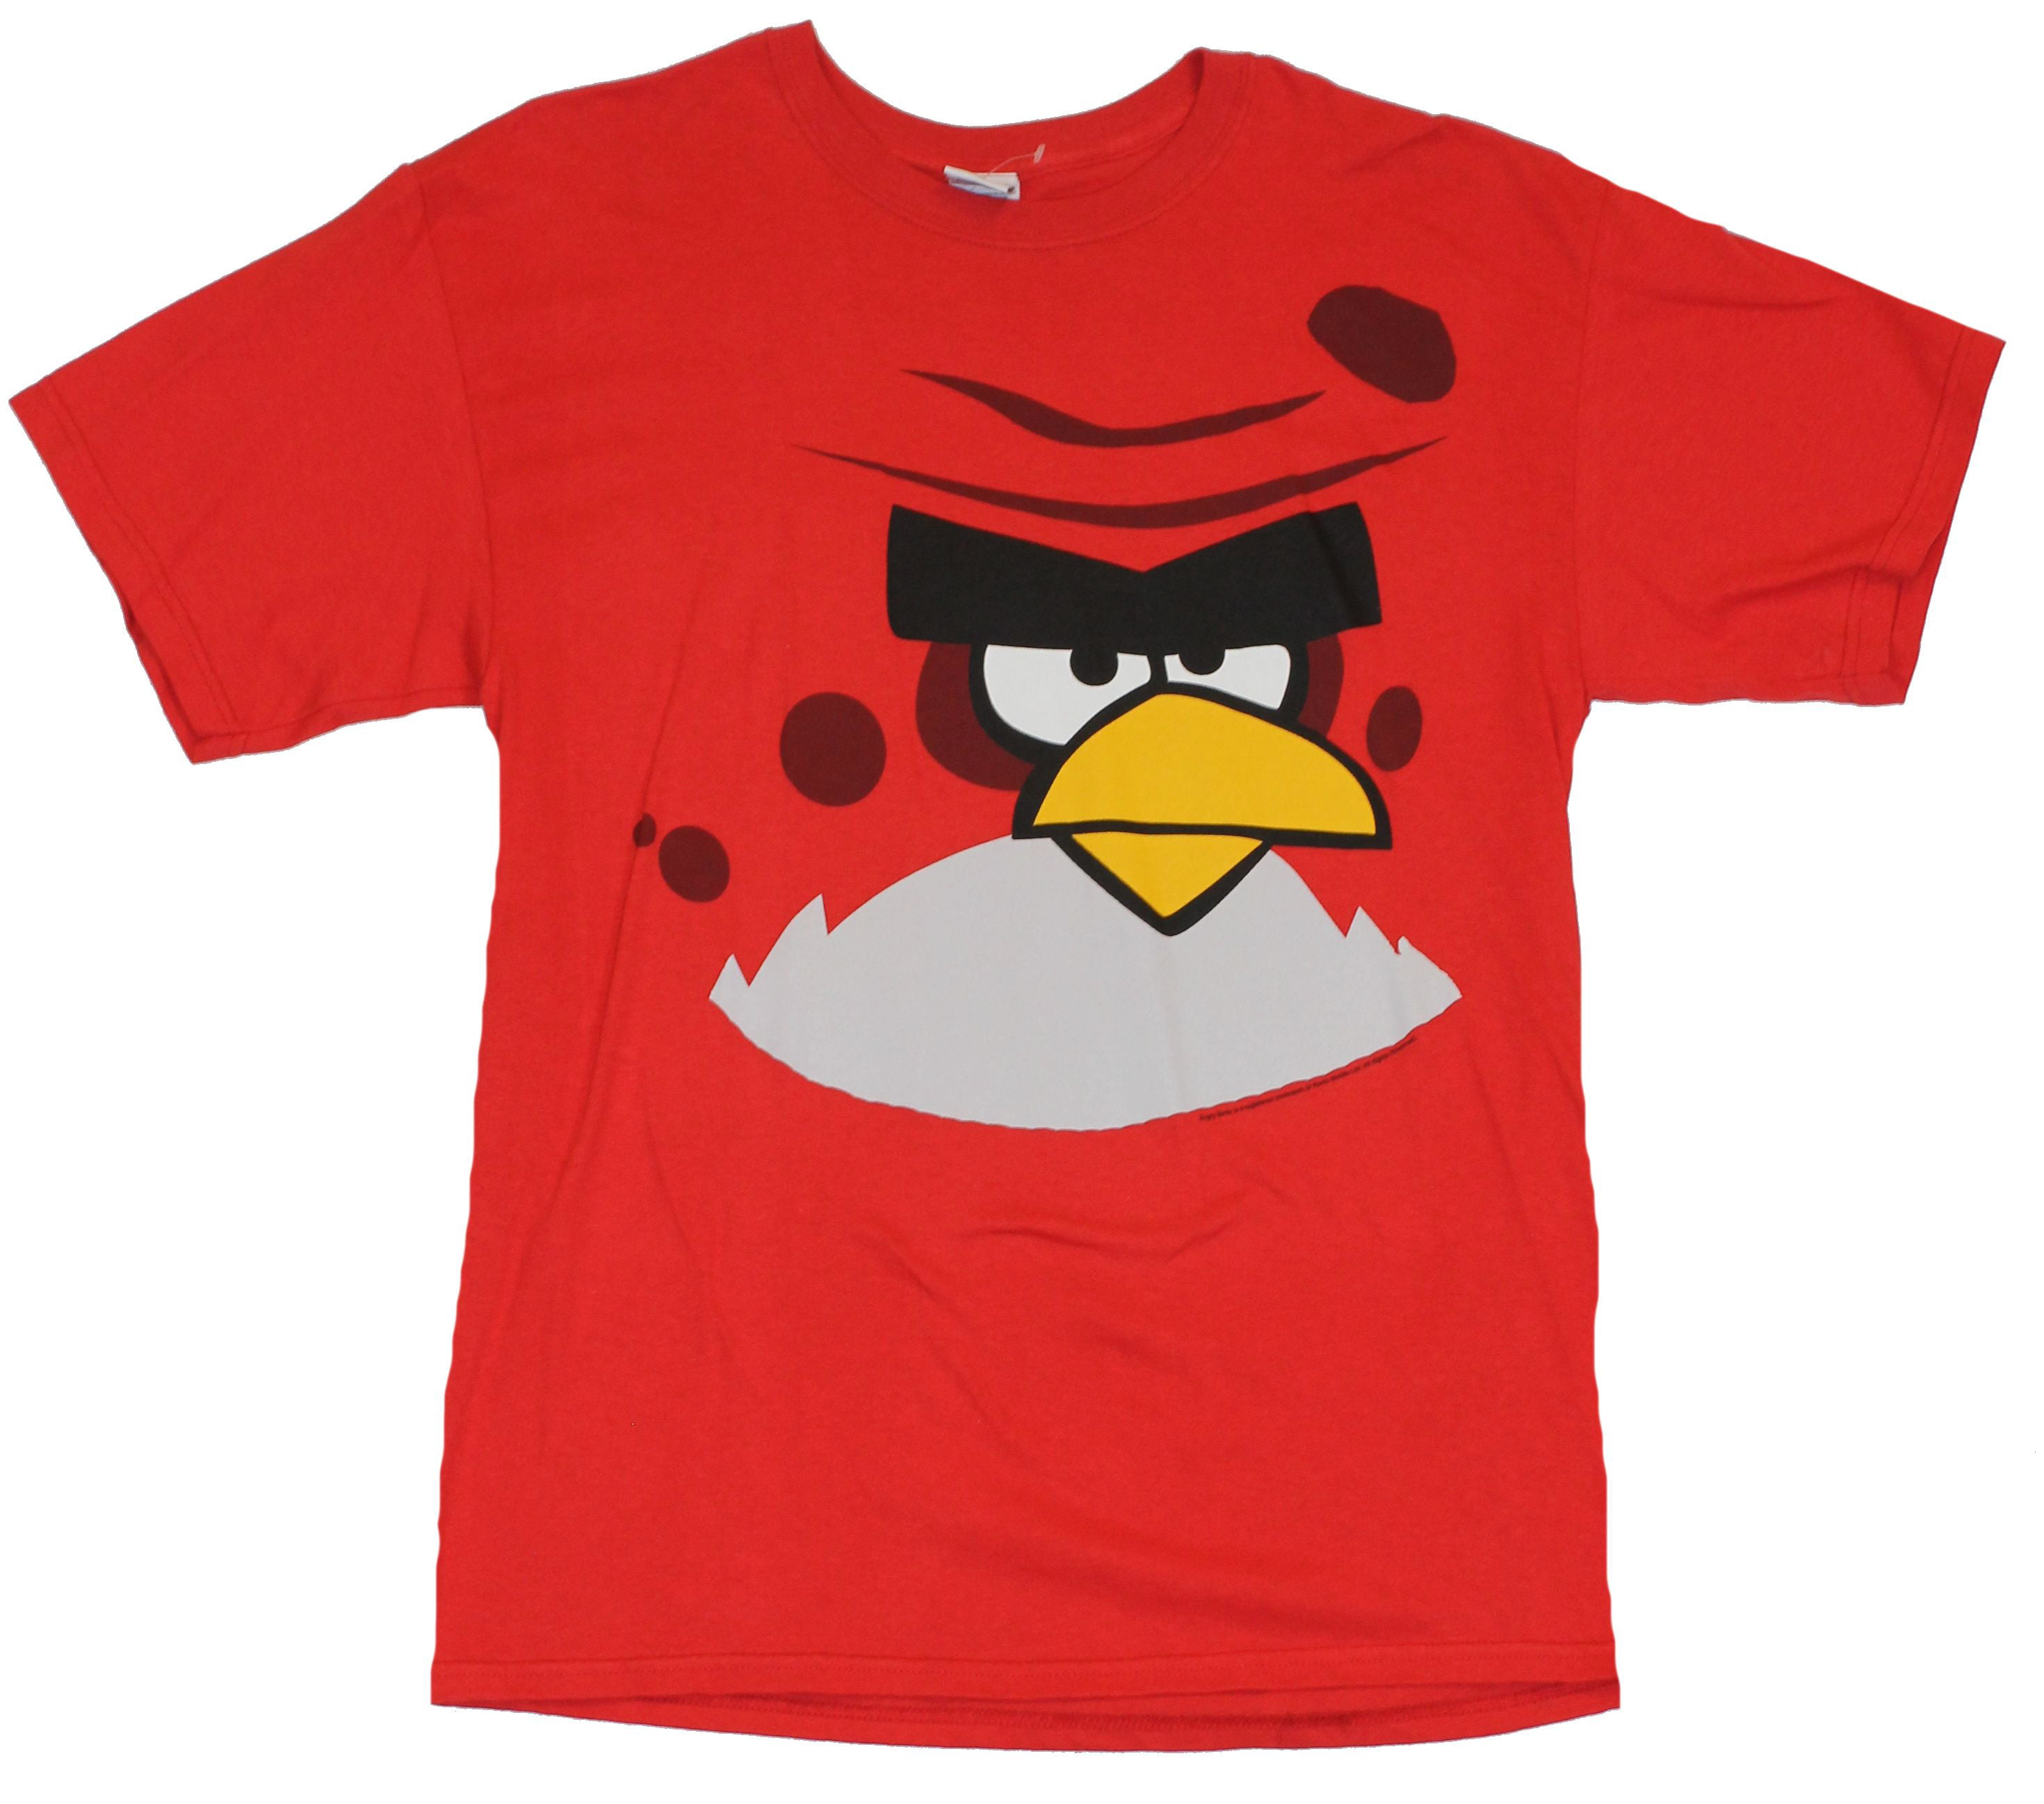 red bird t shirt